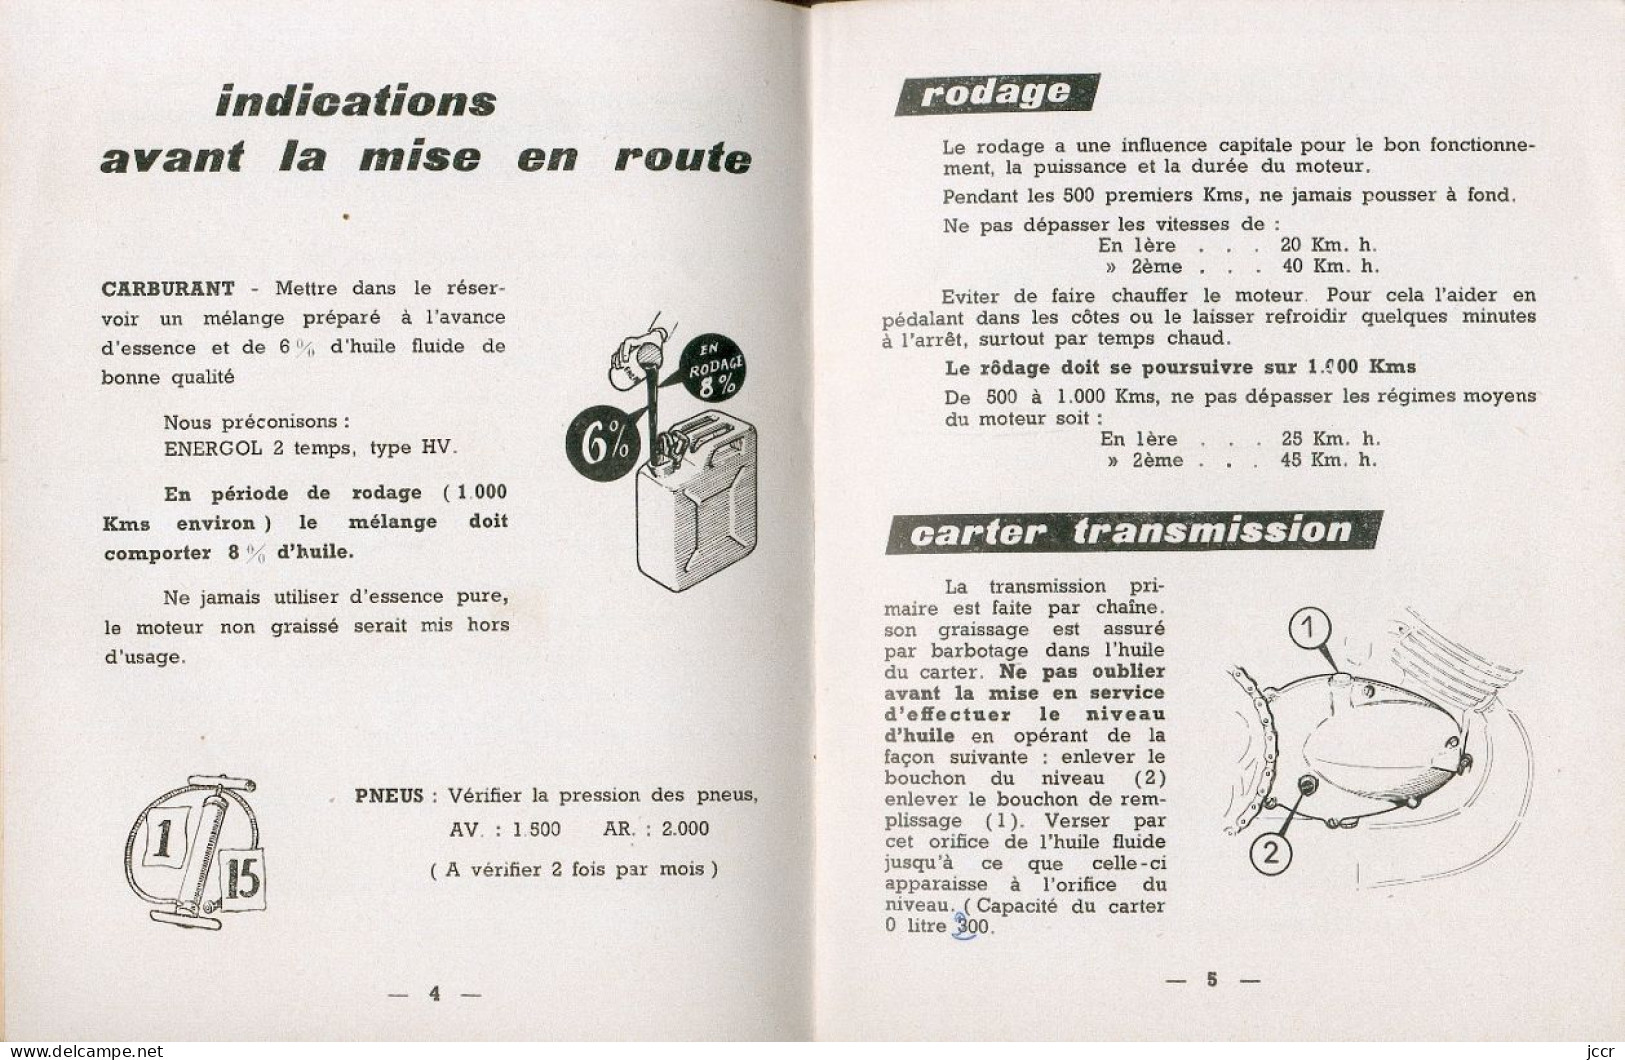 Les Cyclomoteurs Peugeot 49 Cm3 2 Vitesses - Notice D'Entretien - 1957 - Moto